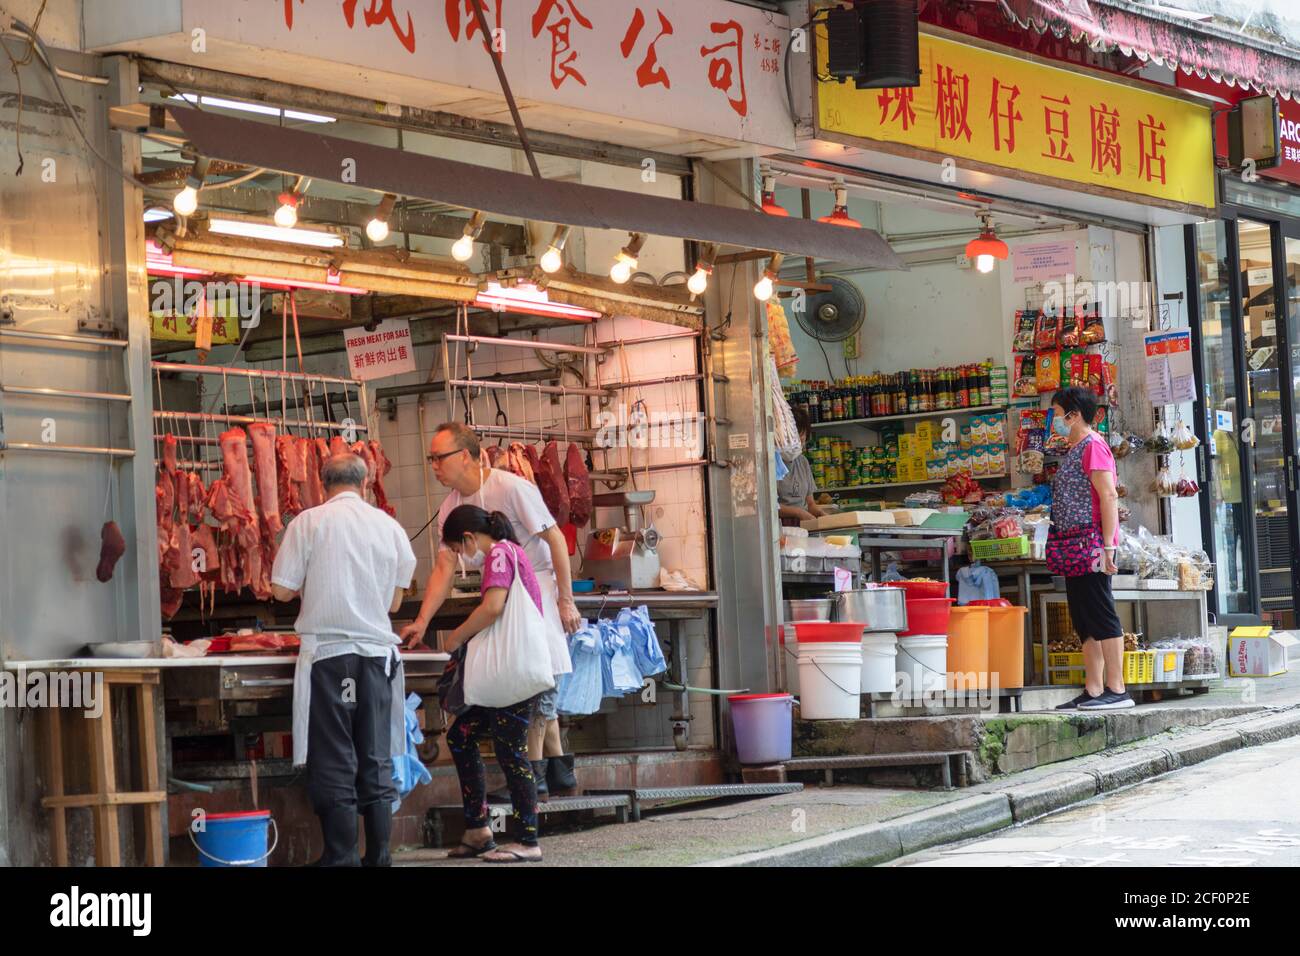 Grocery store and butcher, Sai Ying Pun, Hong Kong Island, Hong Kong Stock Photo